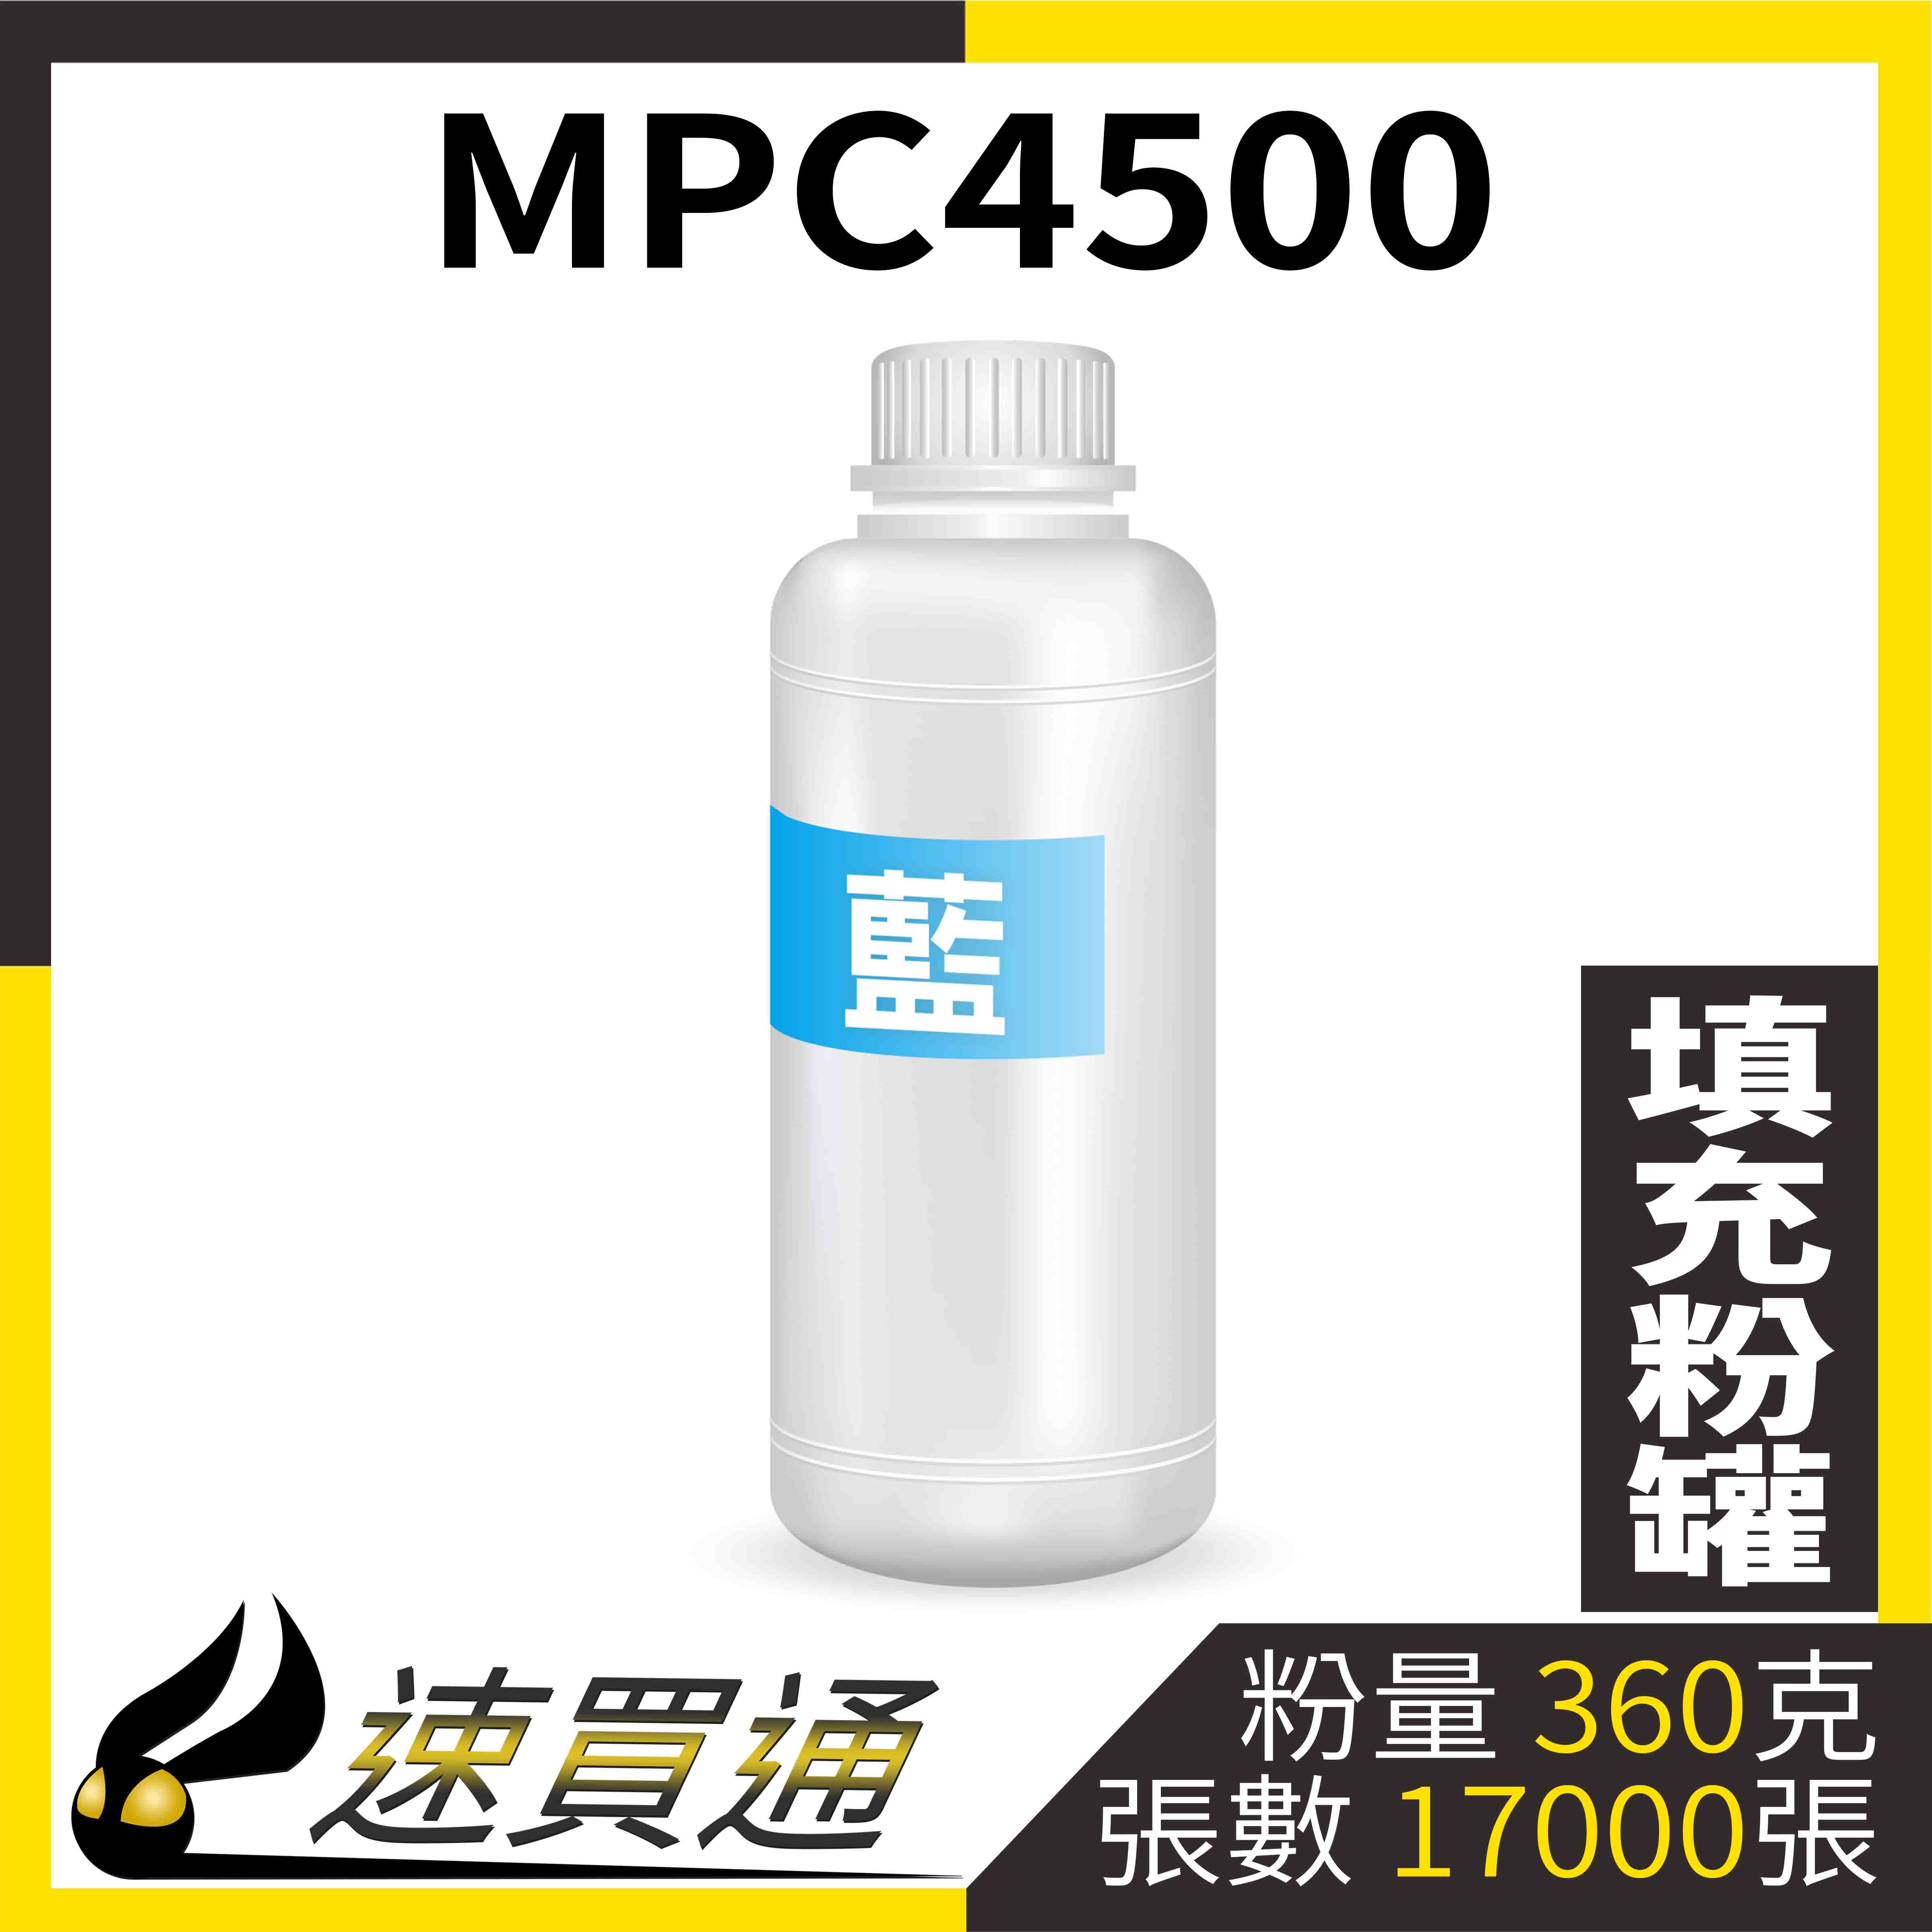 【速買通】RICOH MPC4500 藍 填充式碳粉罐